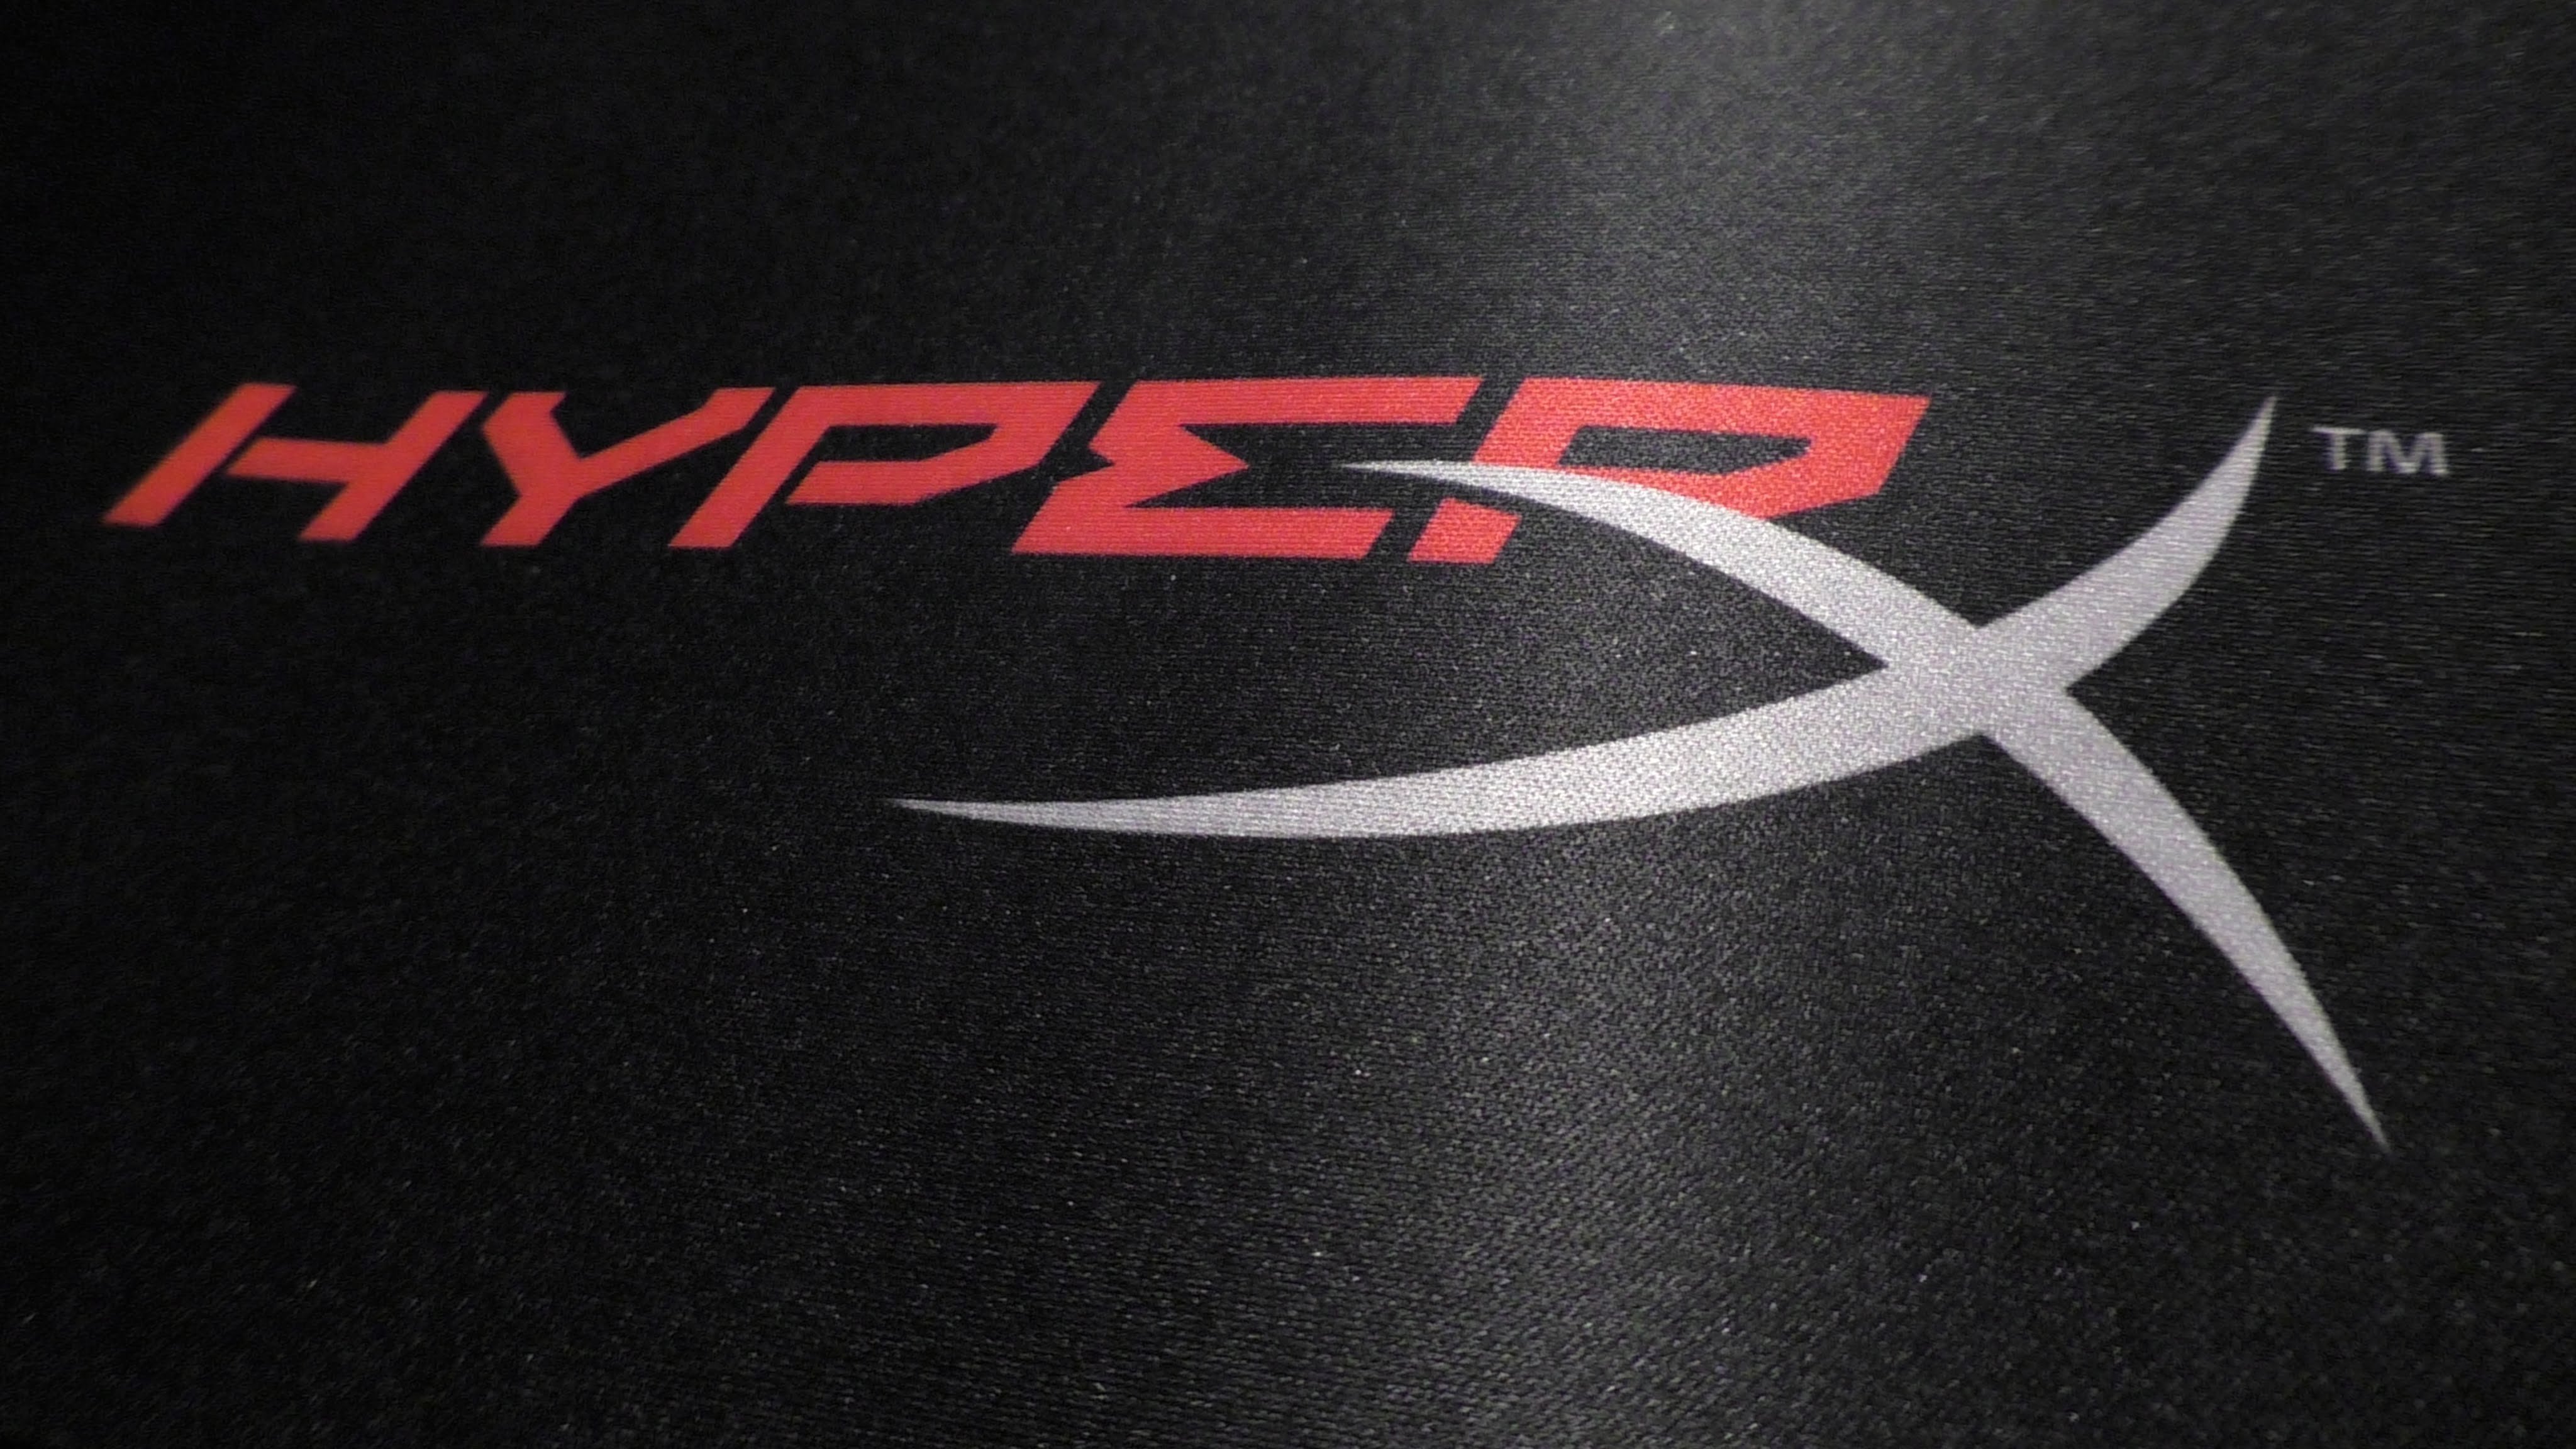 HYPERX logo